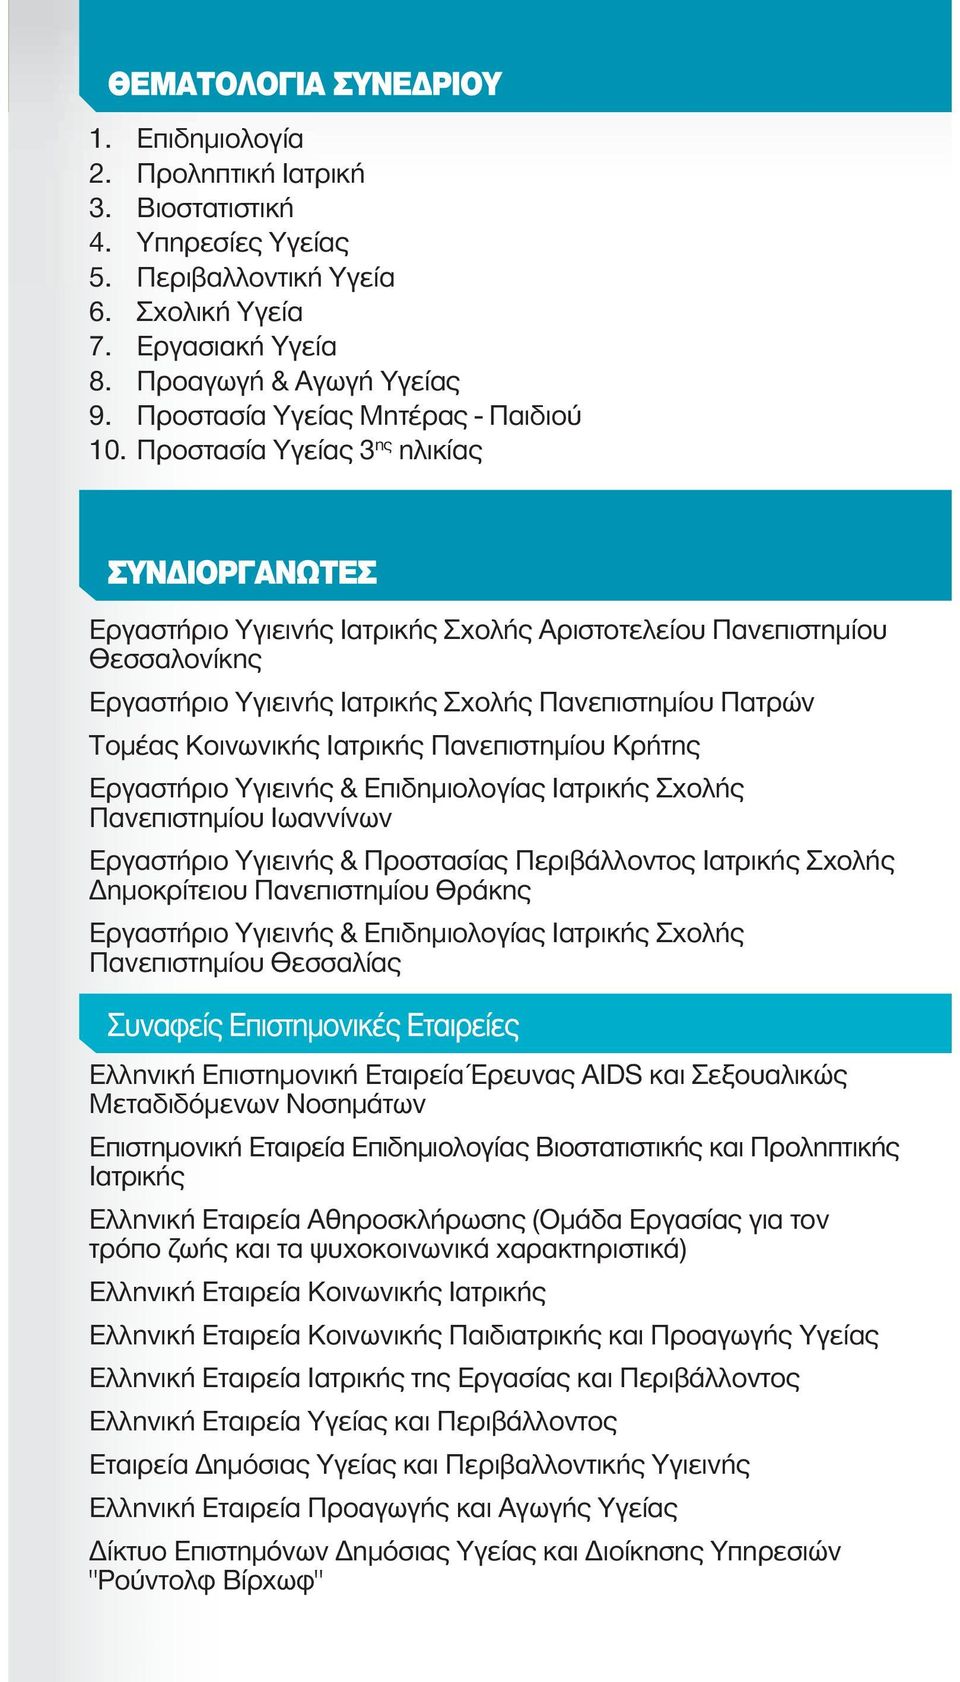 Προστασία Υγείας 3 ης ηλικίας Εργαστήριο Υγιεινής Ιατρικής Σχολής Αριστοτελείου Πανεπιστημίου Θεσσαλονίκης Εργαστήριο Υγιεινής Ιατρικής Σχολής Πανεπιστημίου Πατρών Τομέας Κοινωνικής Ιατρικής